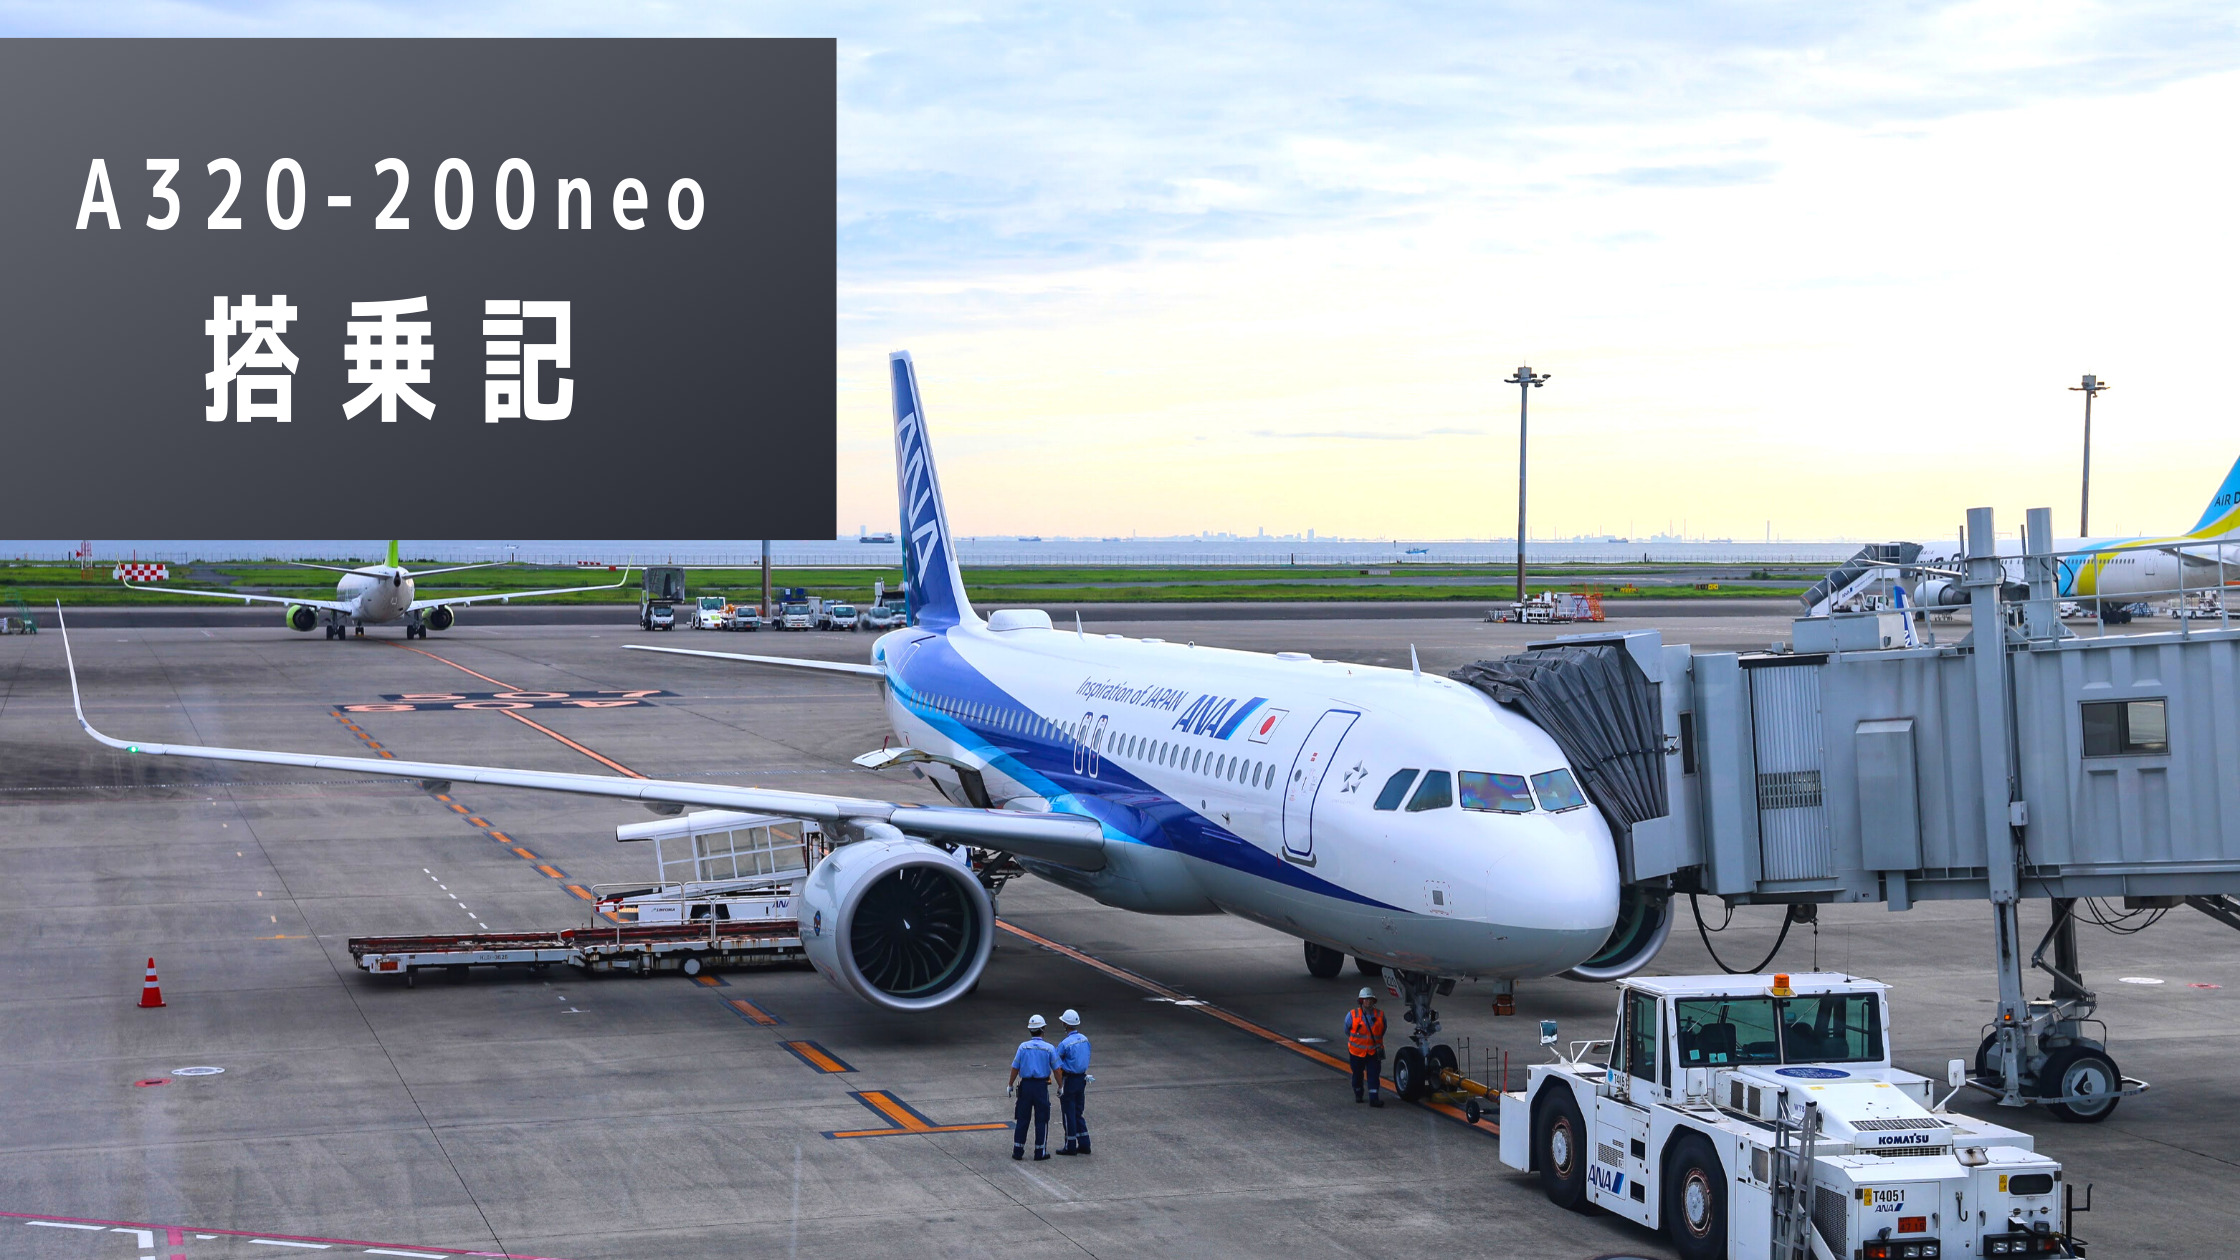 羽田 秋田 全日本空輸 Ana A3 0neo搭乗記 コロナ禍で国内路線運用中の国際線仕様機の機内設備とは